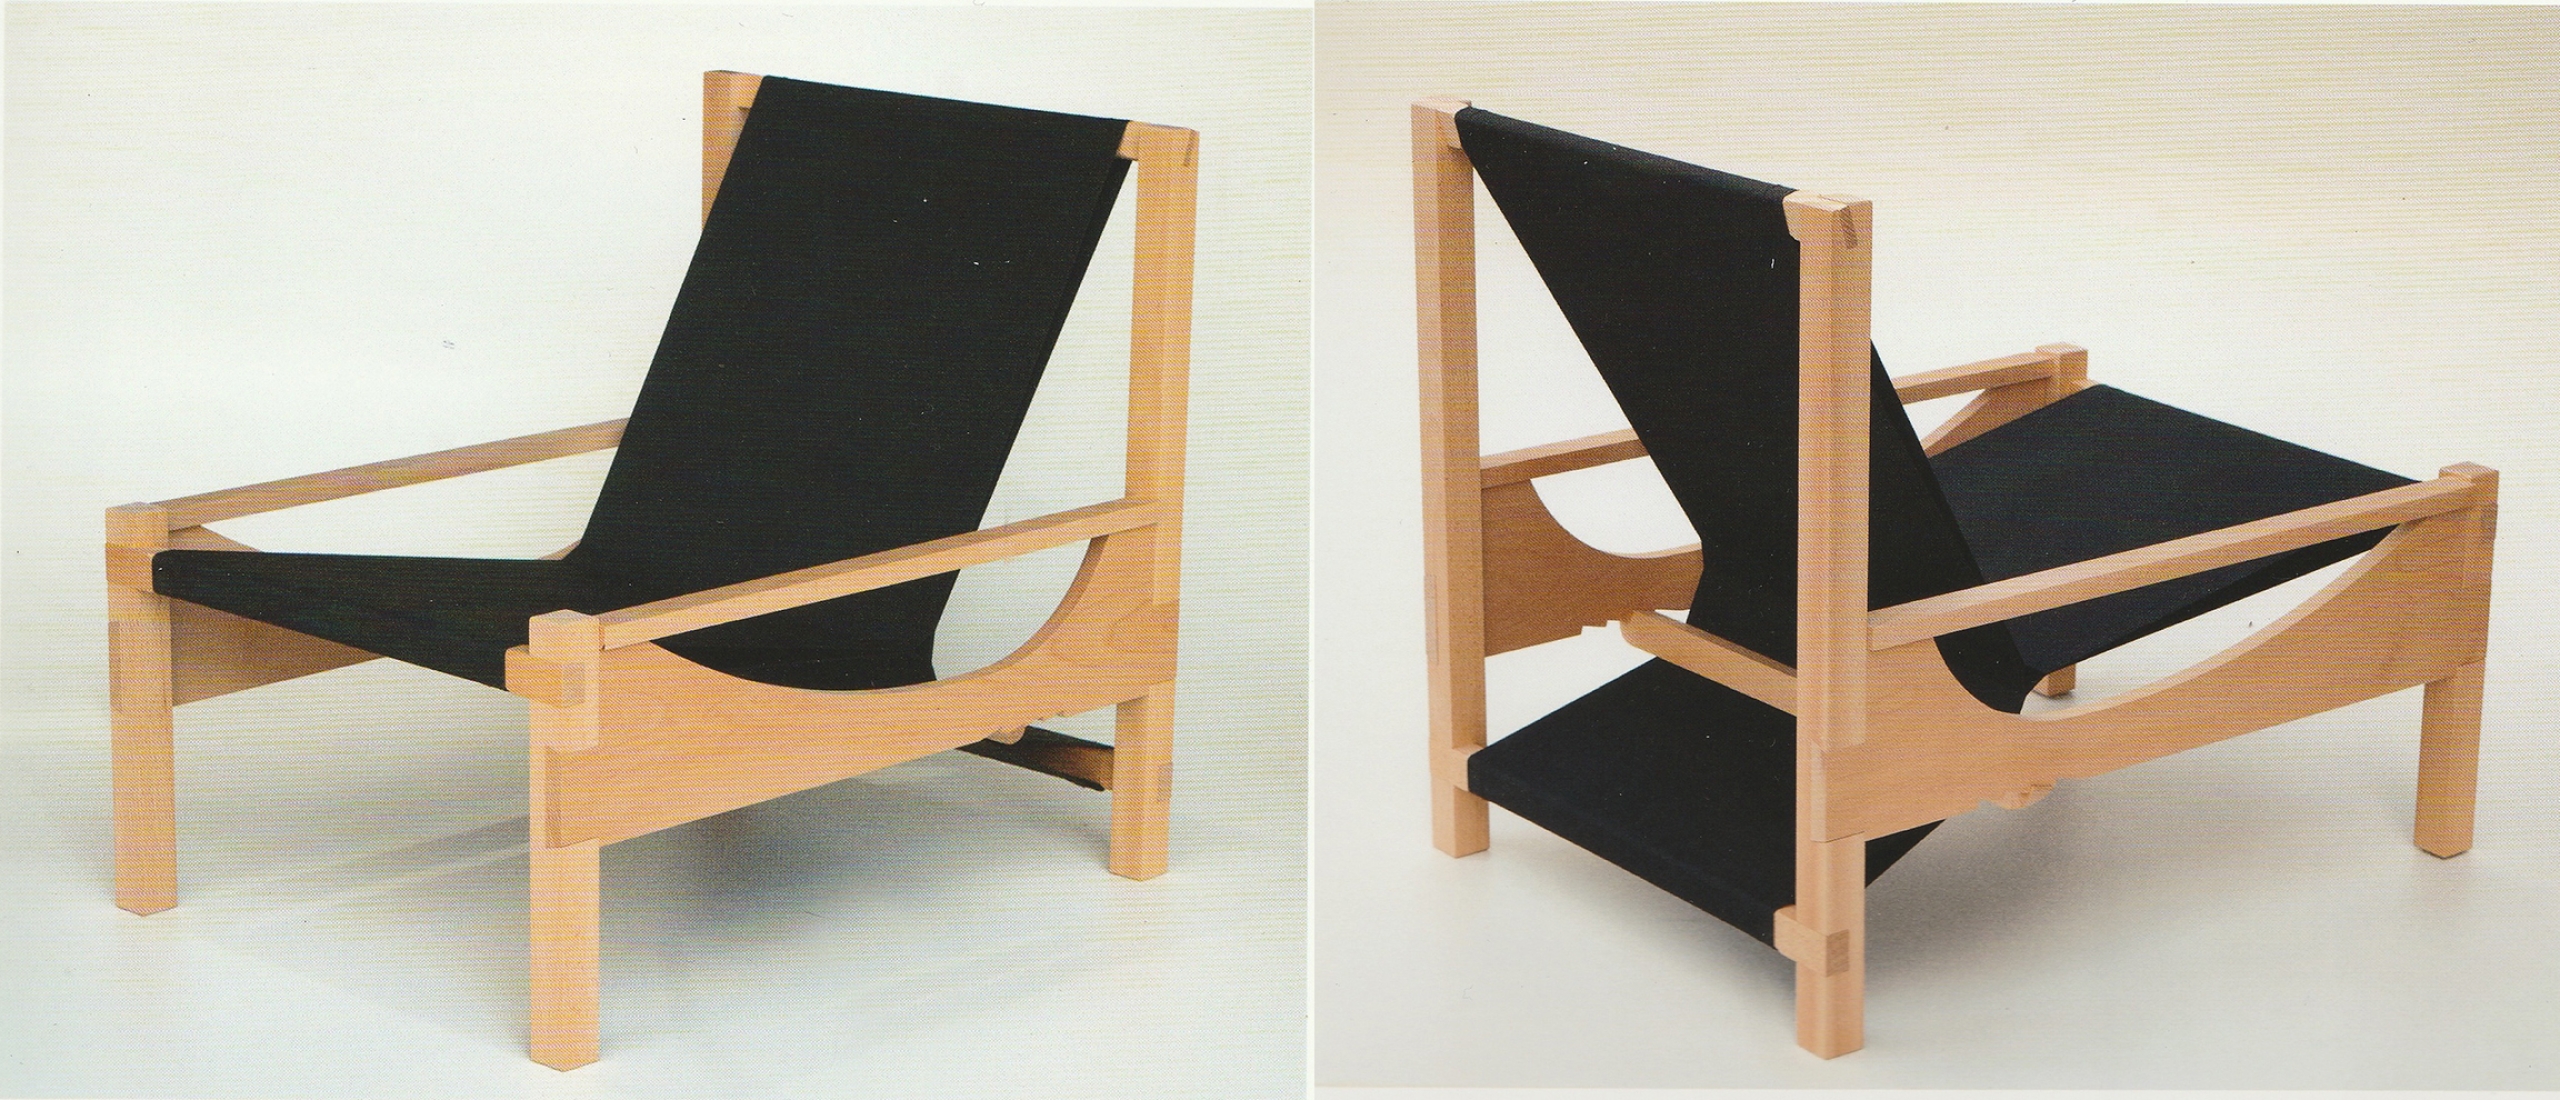 Diseño chileno: La silla Puzzle